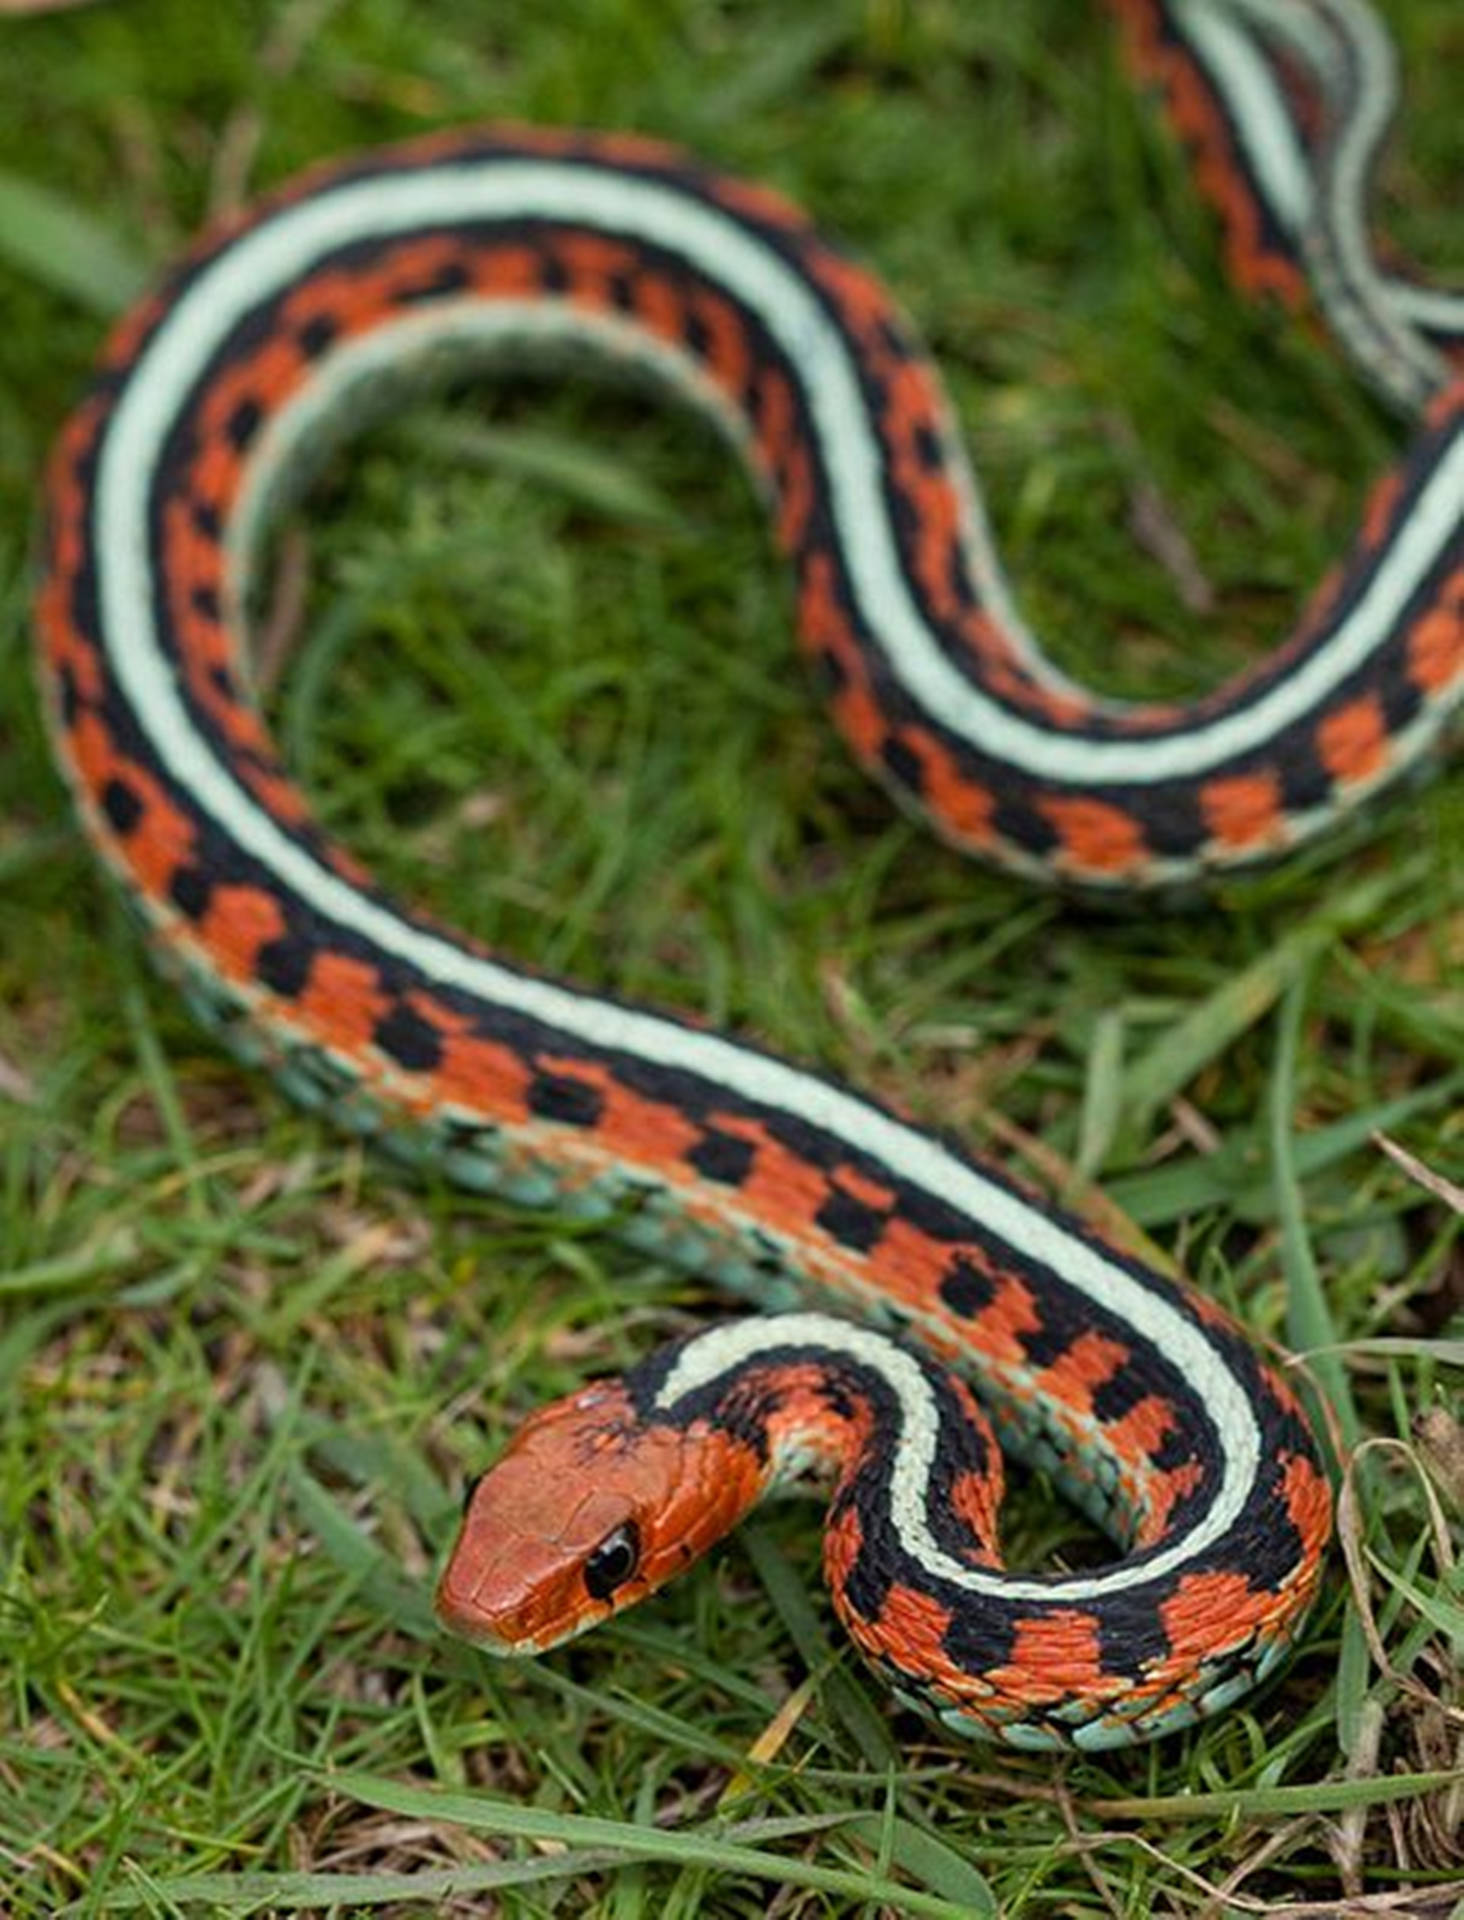 Orange California Red-sided Garter Snake Background